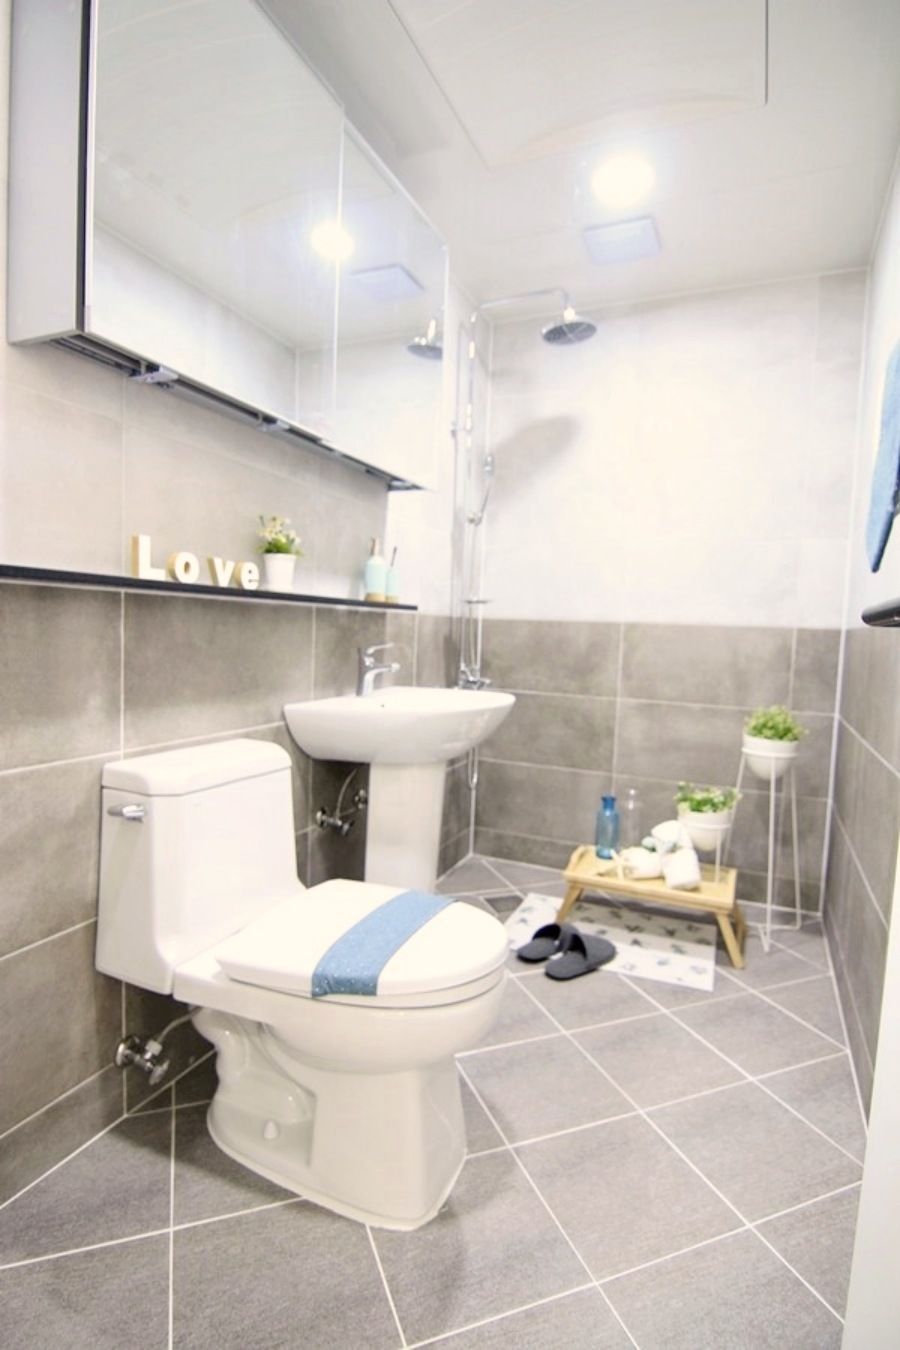 동산동 빌라 분양 매매 신혼집 투어 욕실